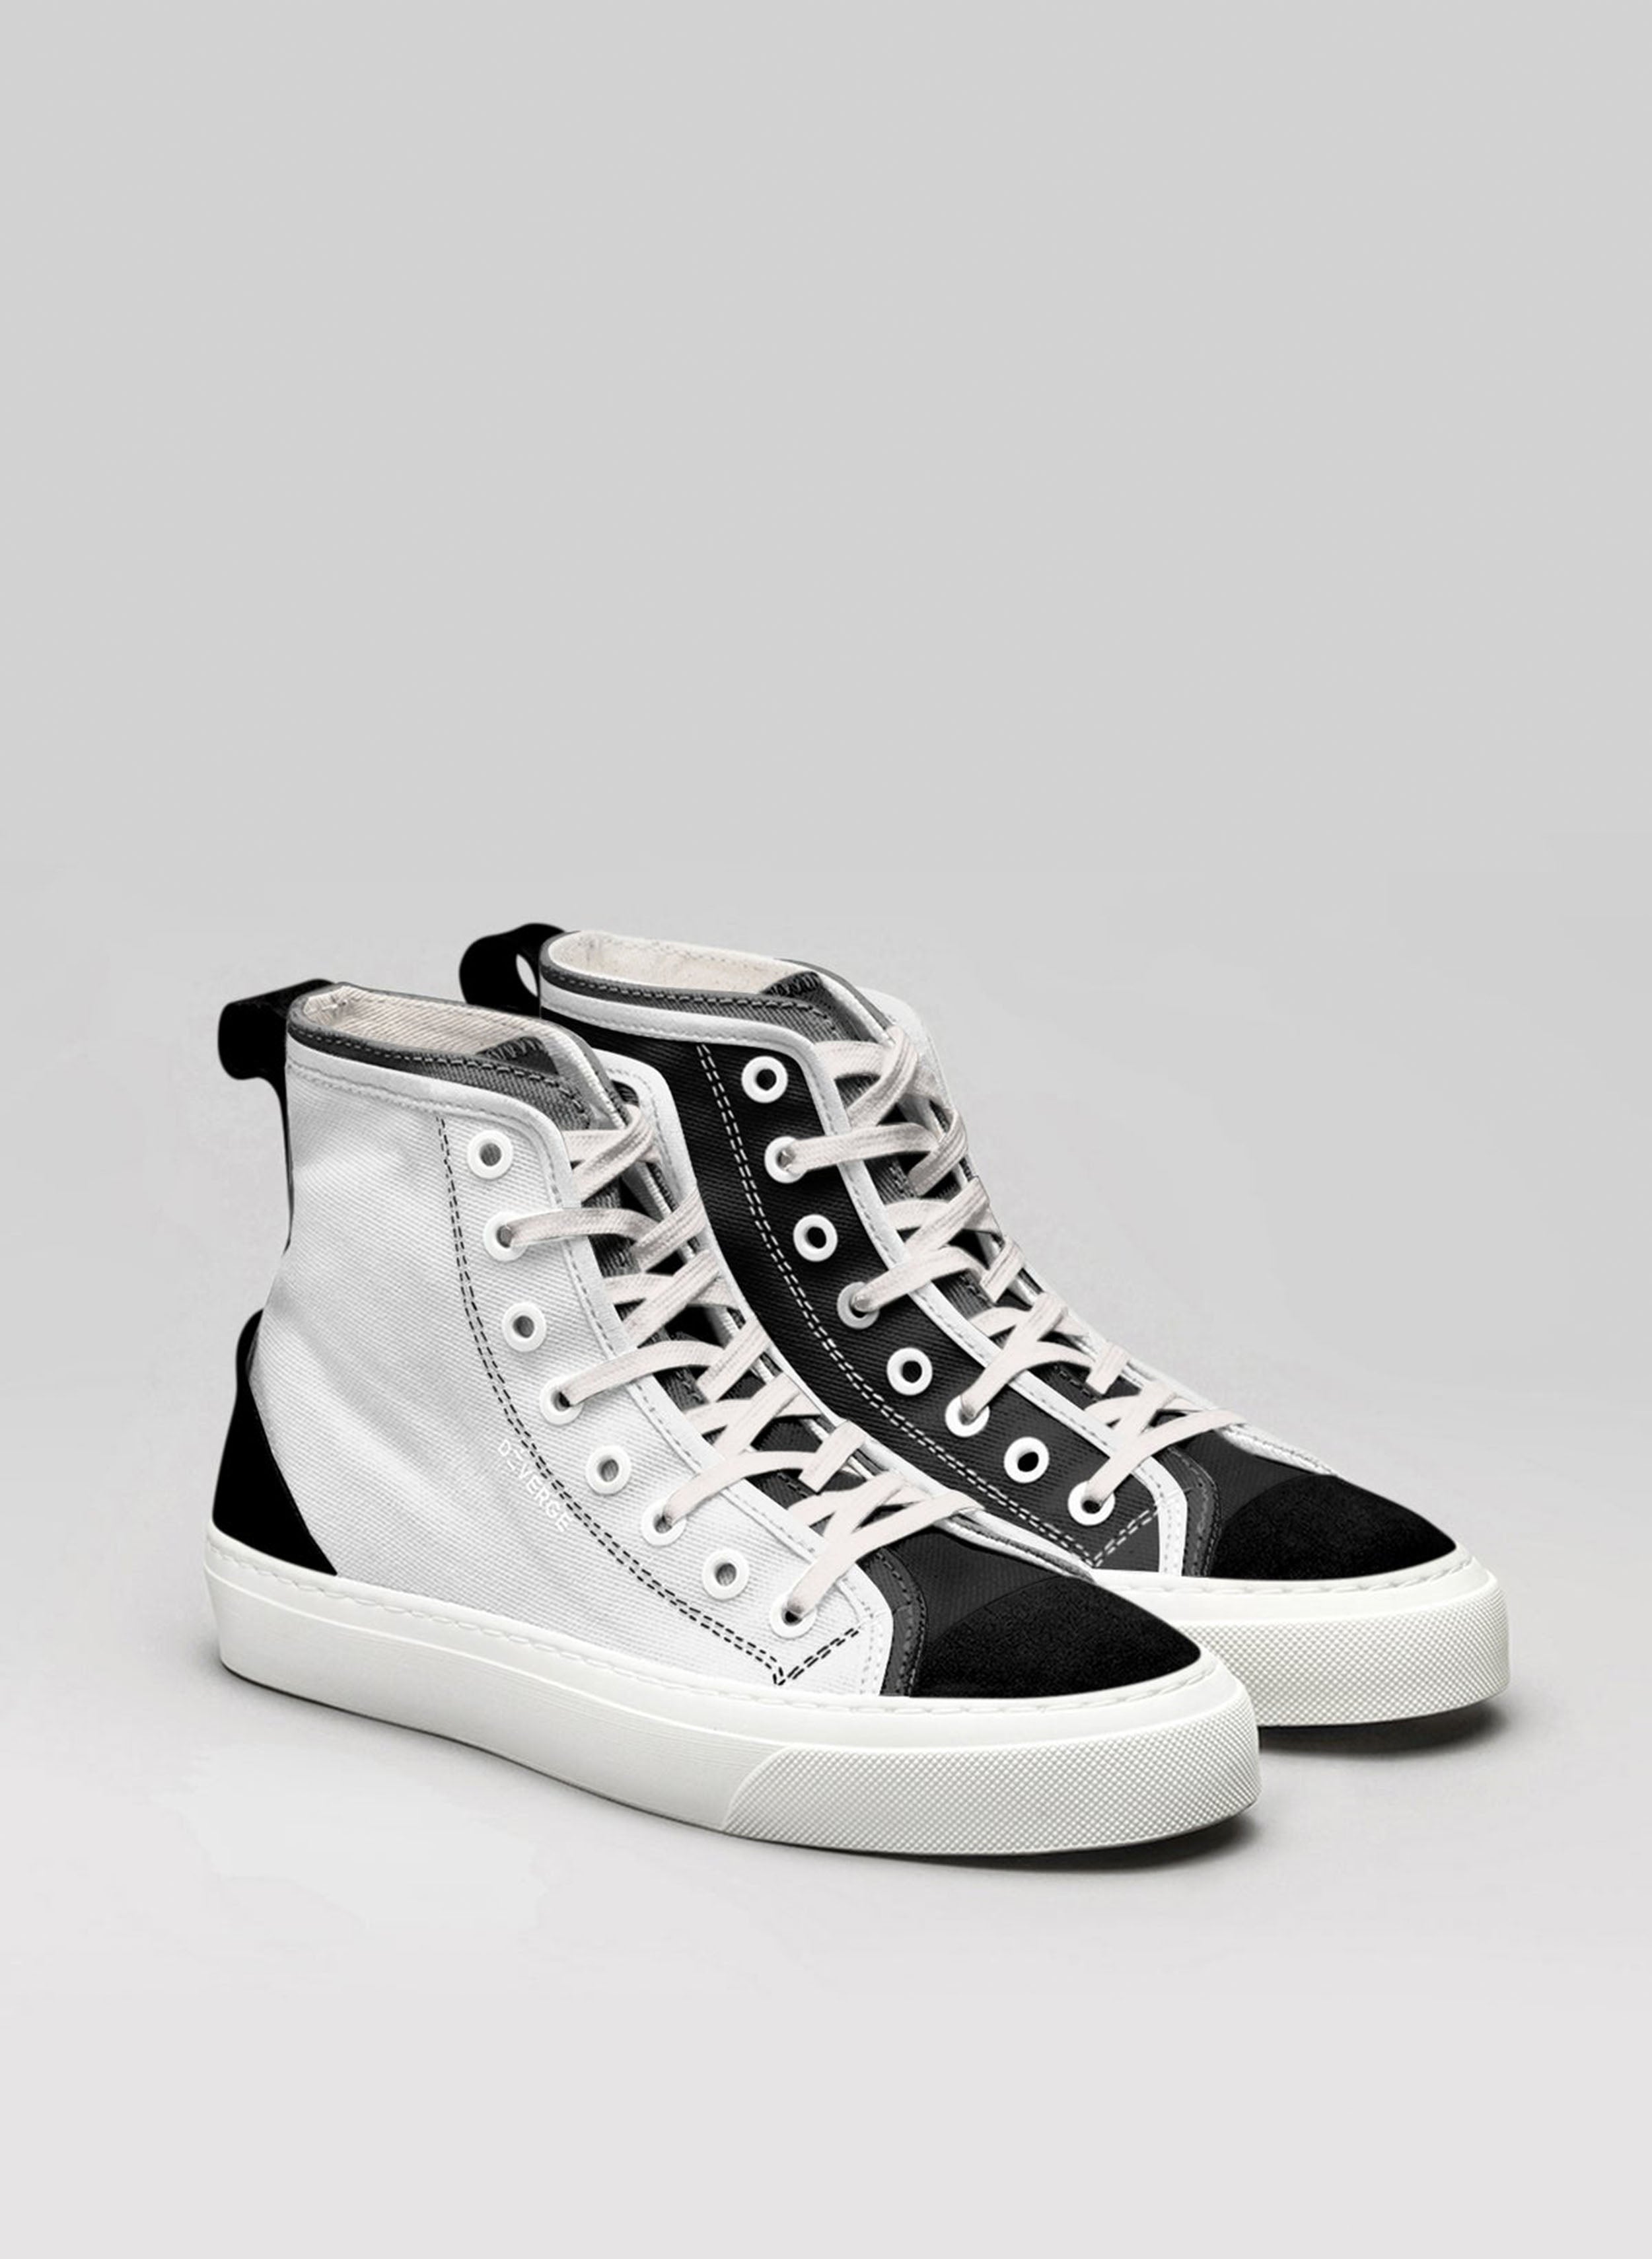 Un par de zapatillas altas en blanco y negro sneakers, luciendo zapatos personalizados por Diverge.